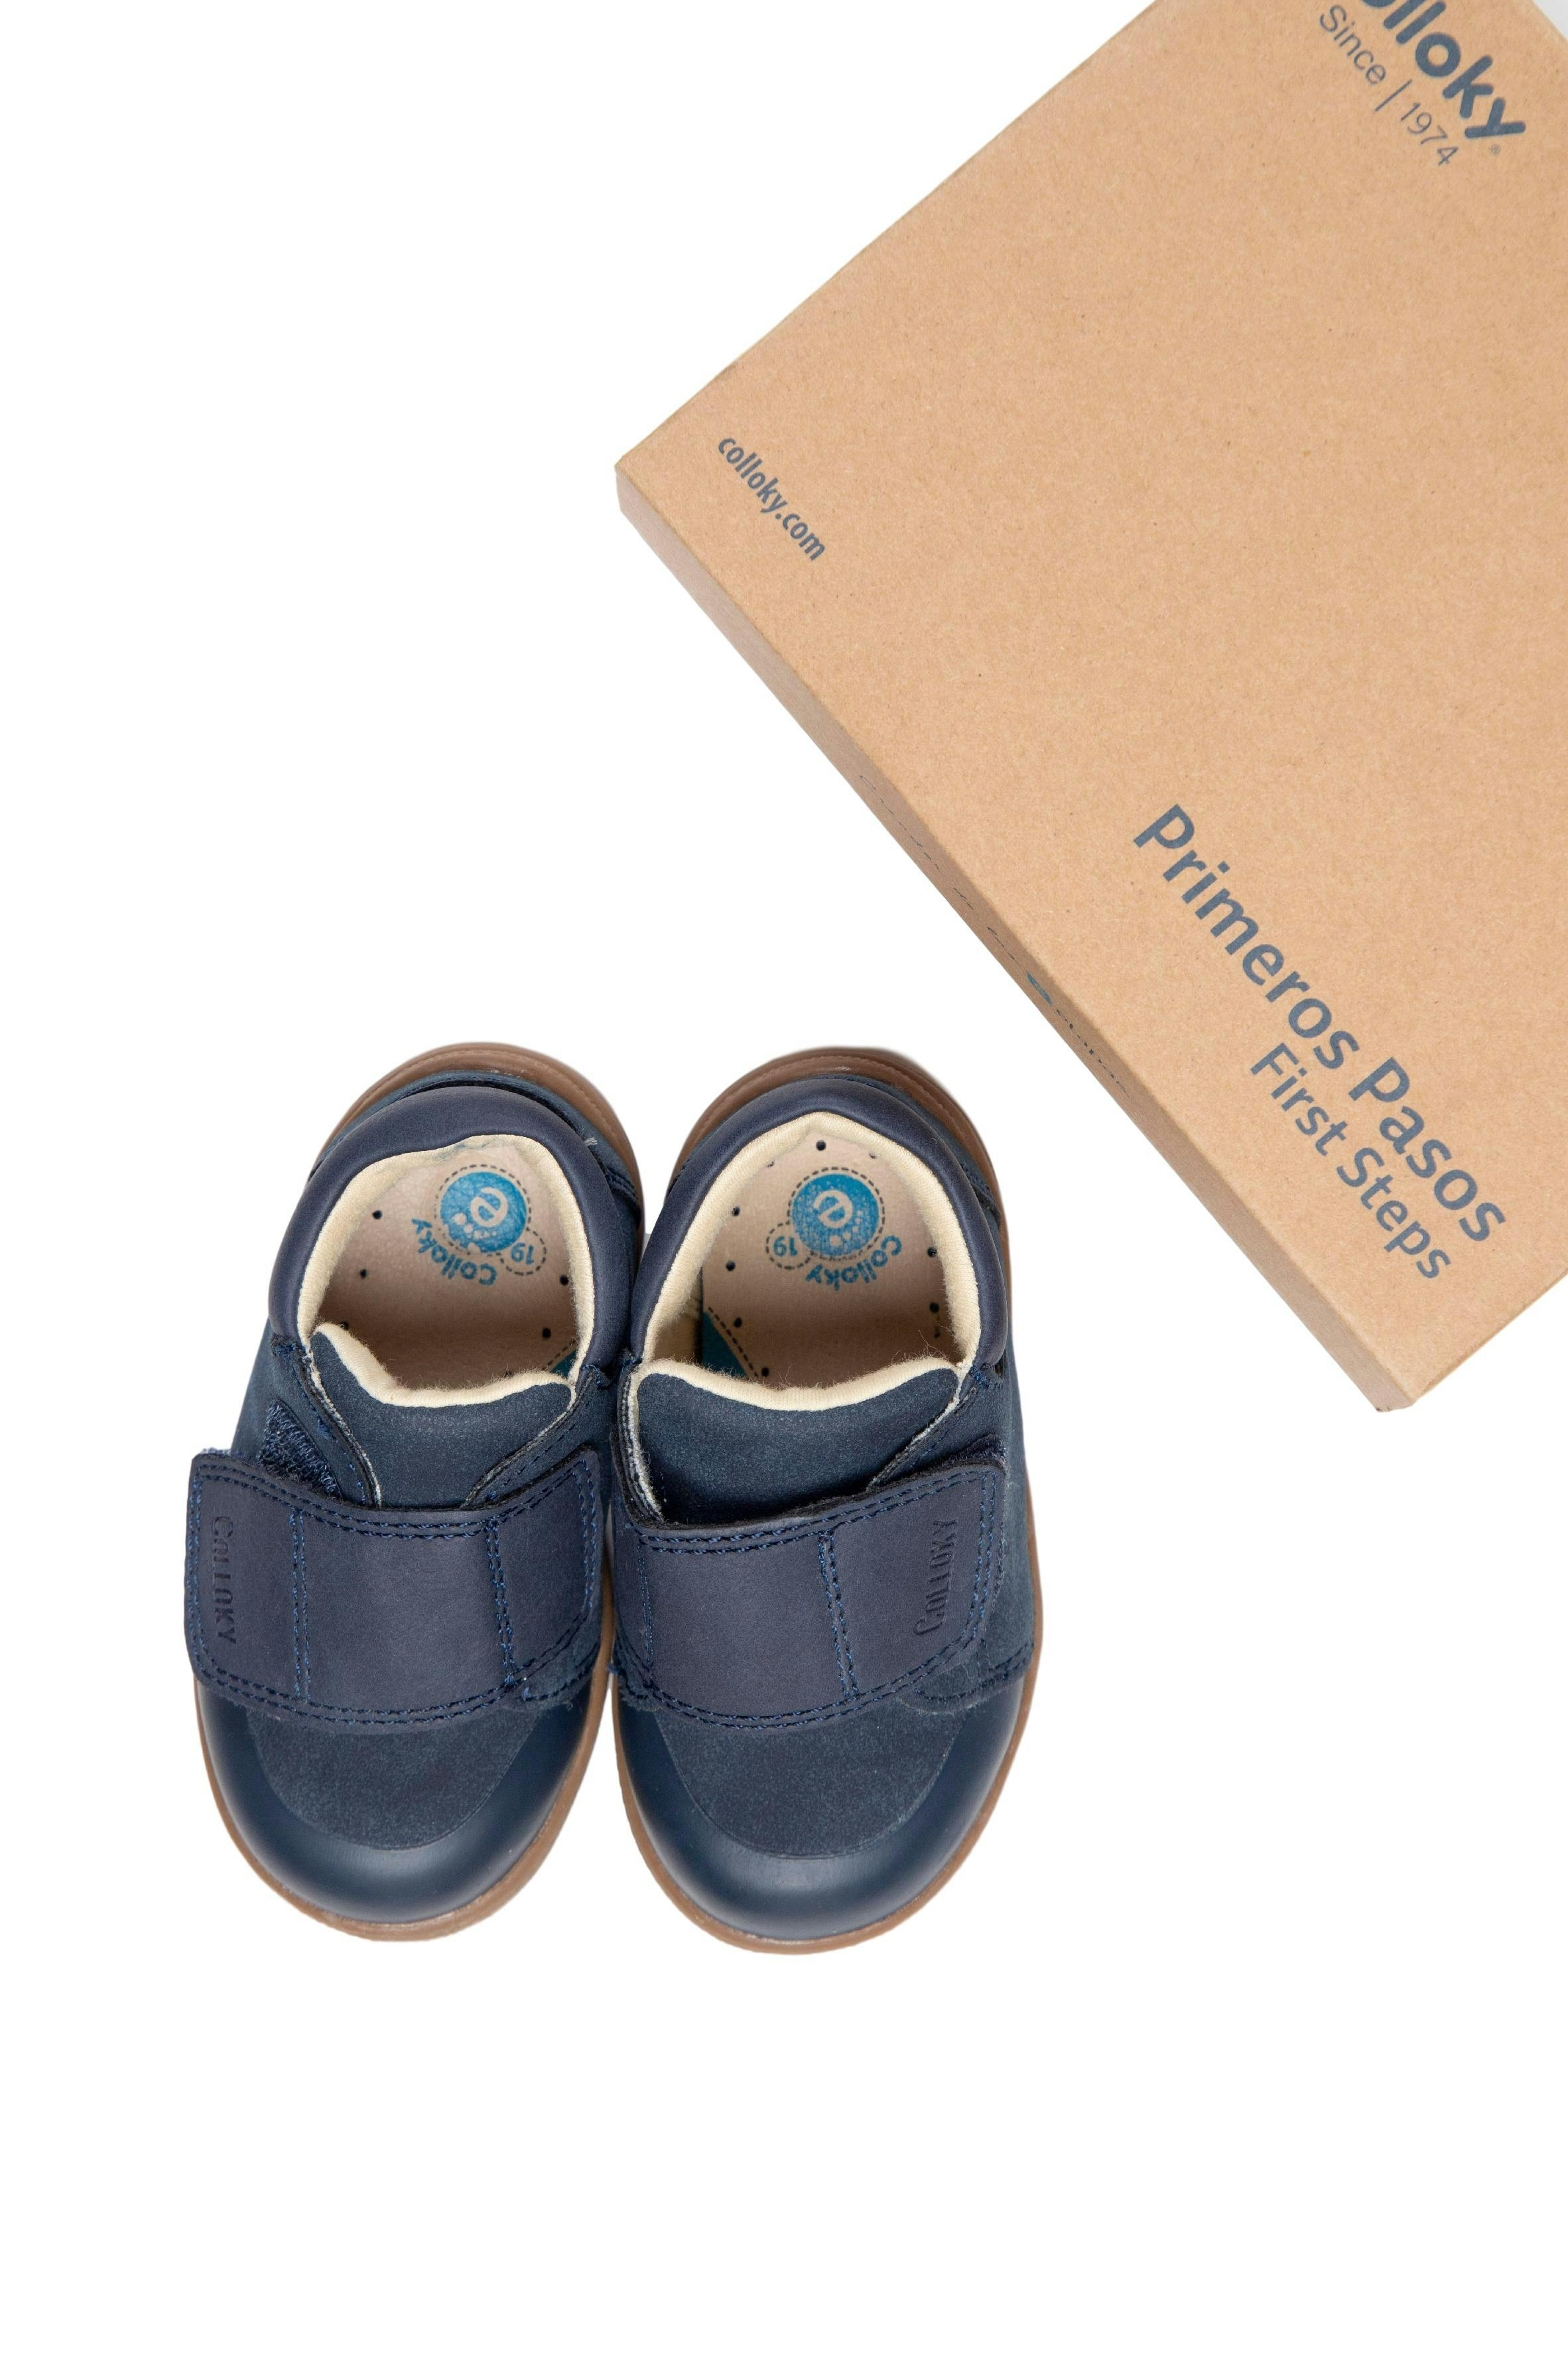 Zapatos de cuero primeros pasos azules con velcro. talla 3.5 americana, 20 europea - Colloky